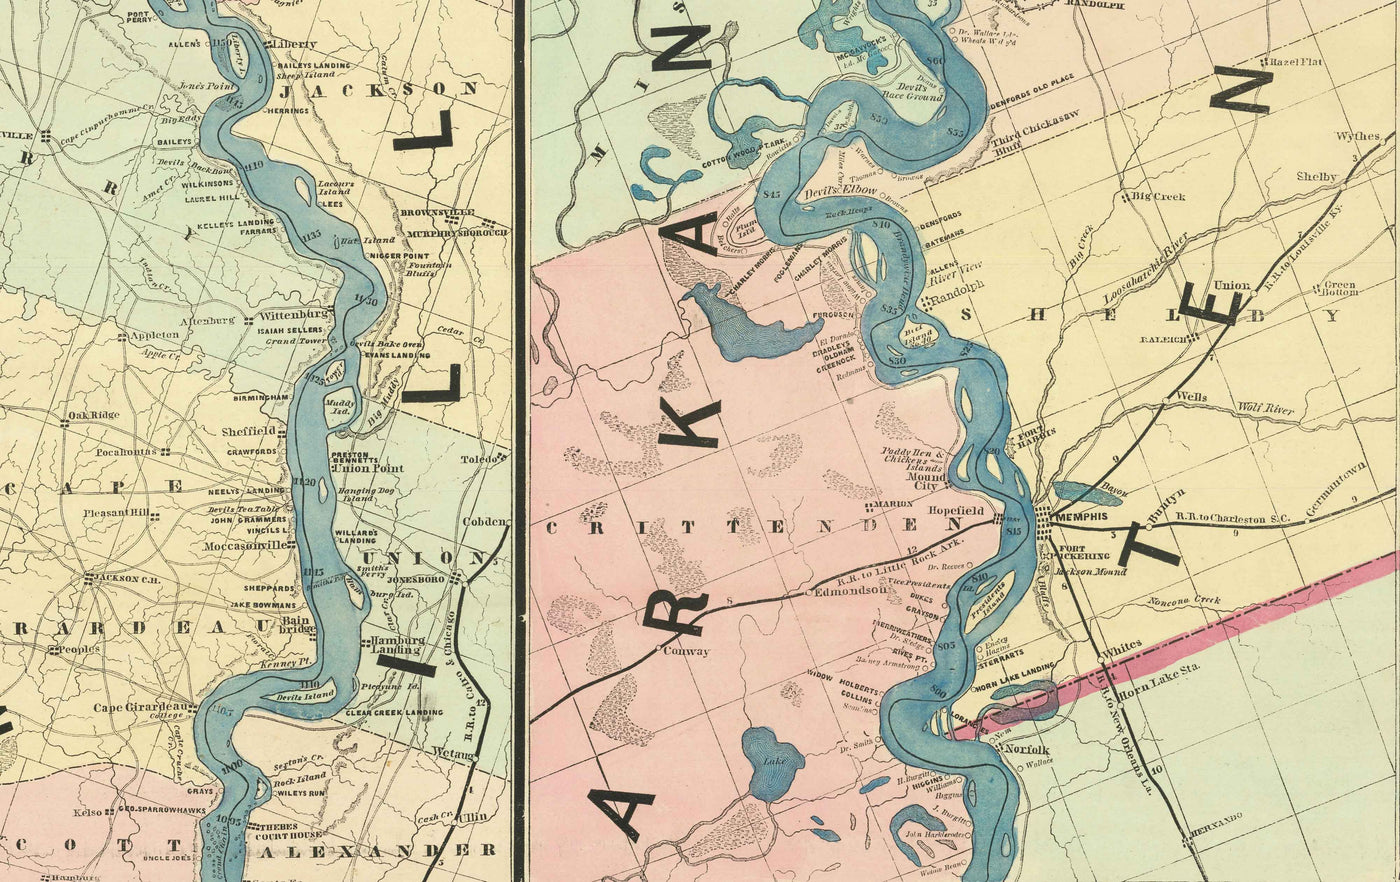 Alte Karte des Mississippi, 1863 von JT Floyd - Streifenkarte von St. Louis bis zum Golf von Mexiko